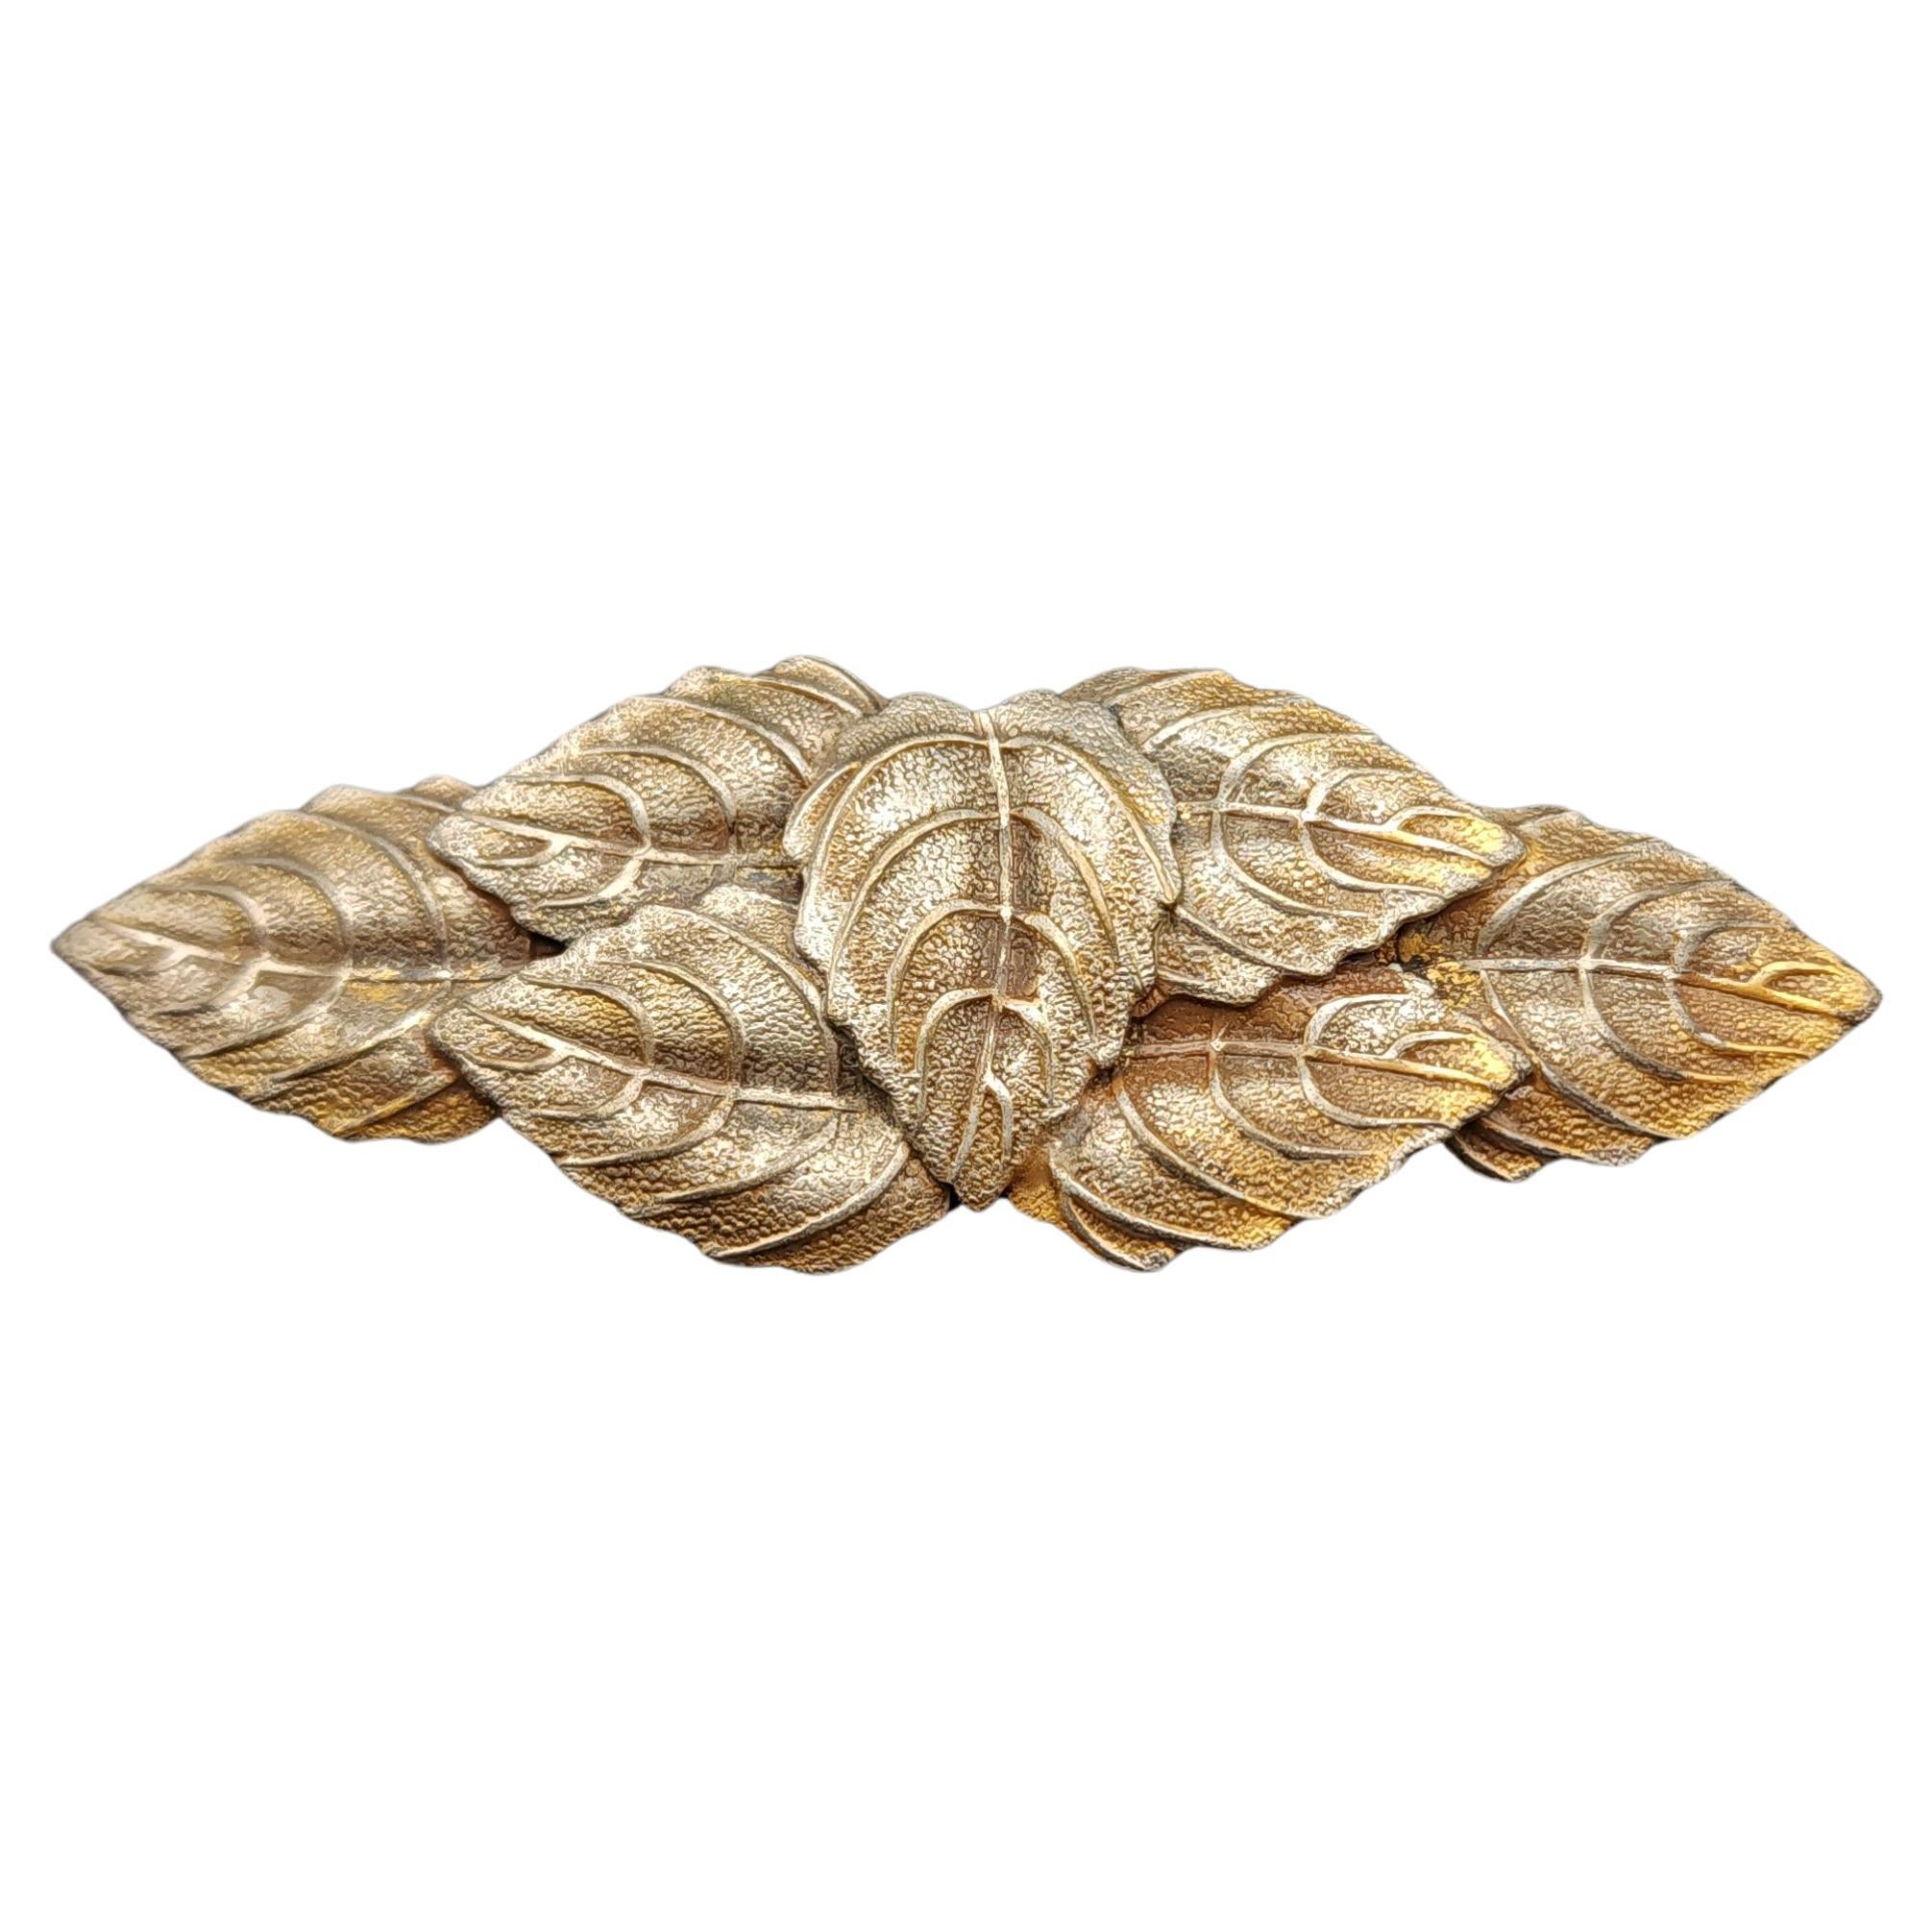 Vintage Gold-Plated Leaf Cluster Brooch - Elegant 7 Leaf Design, 20th Century